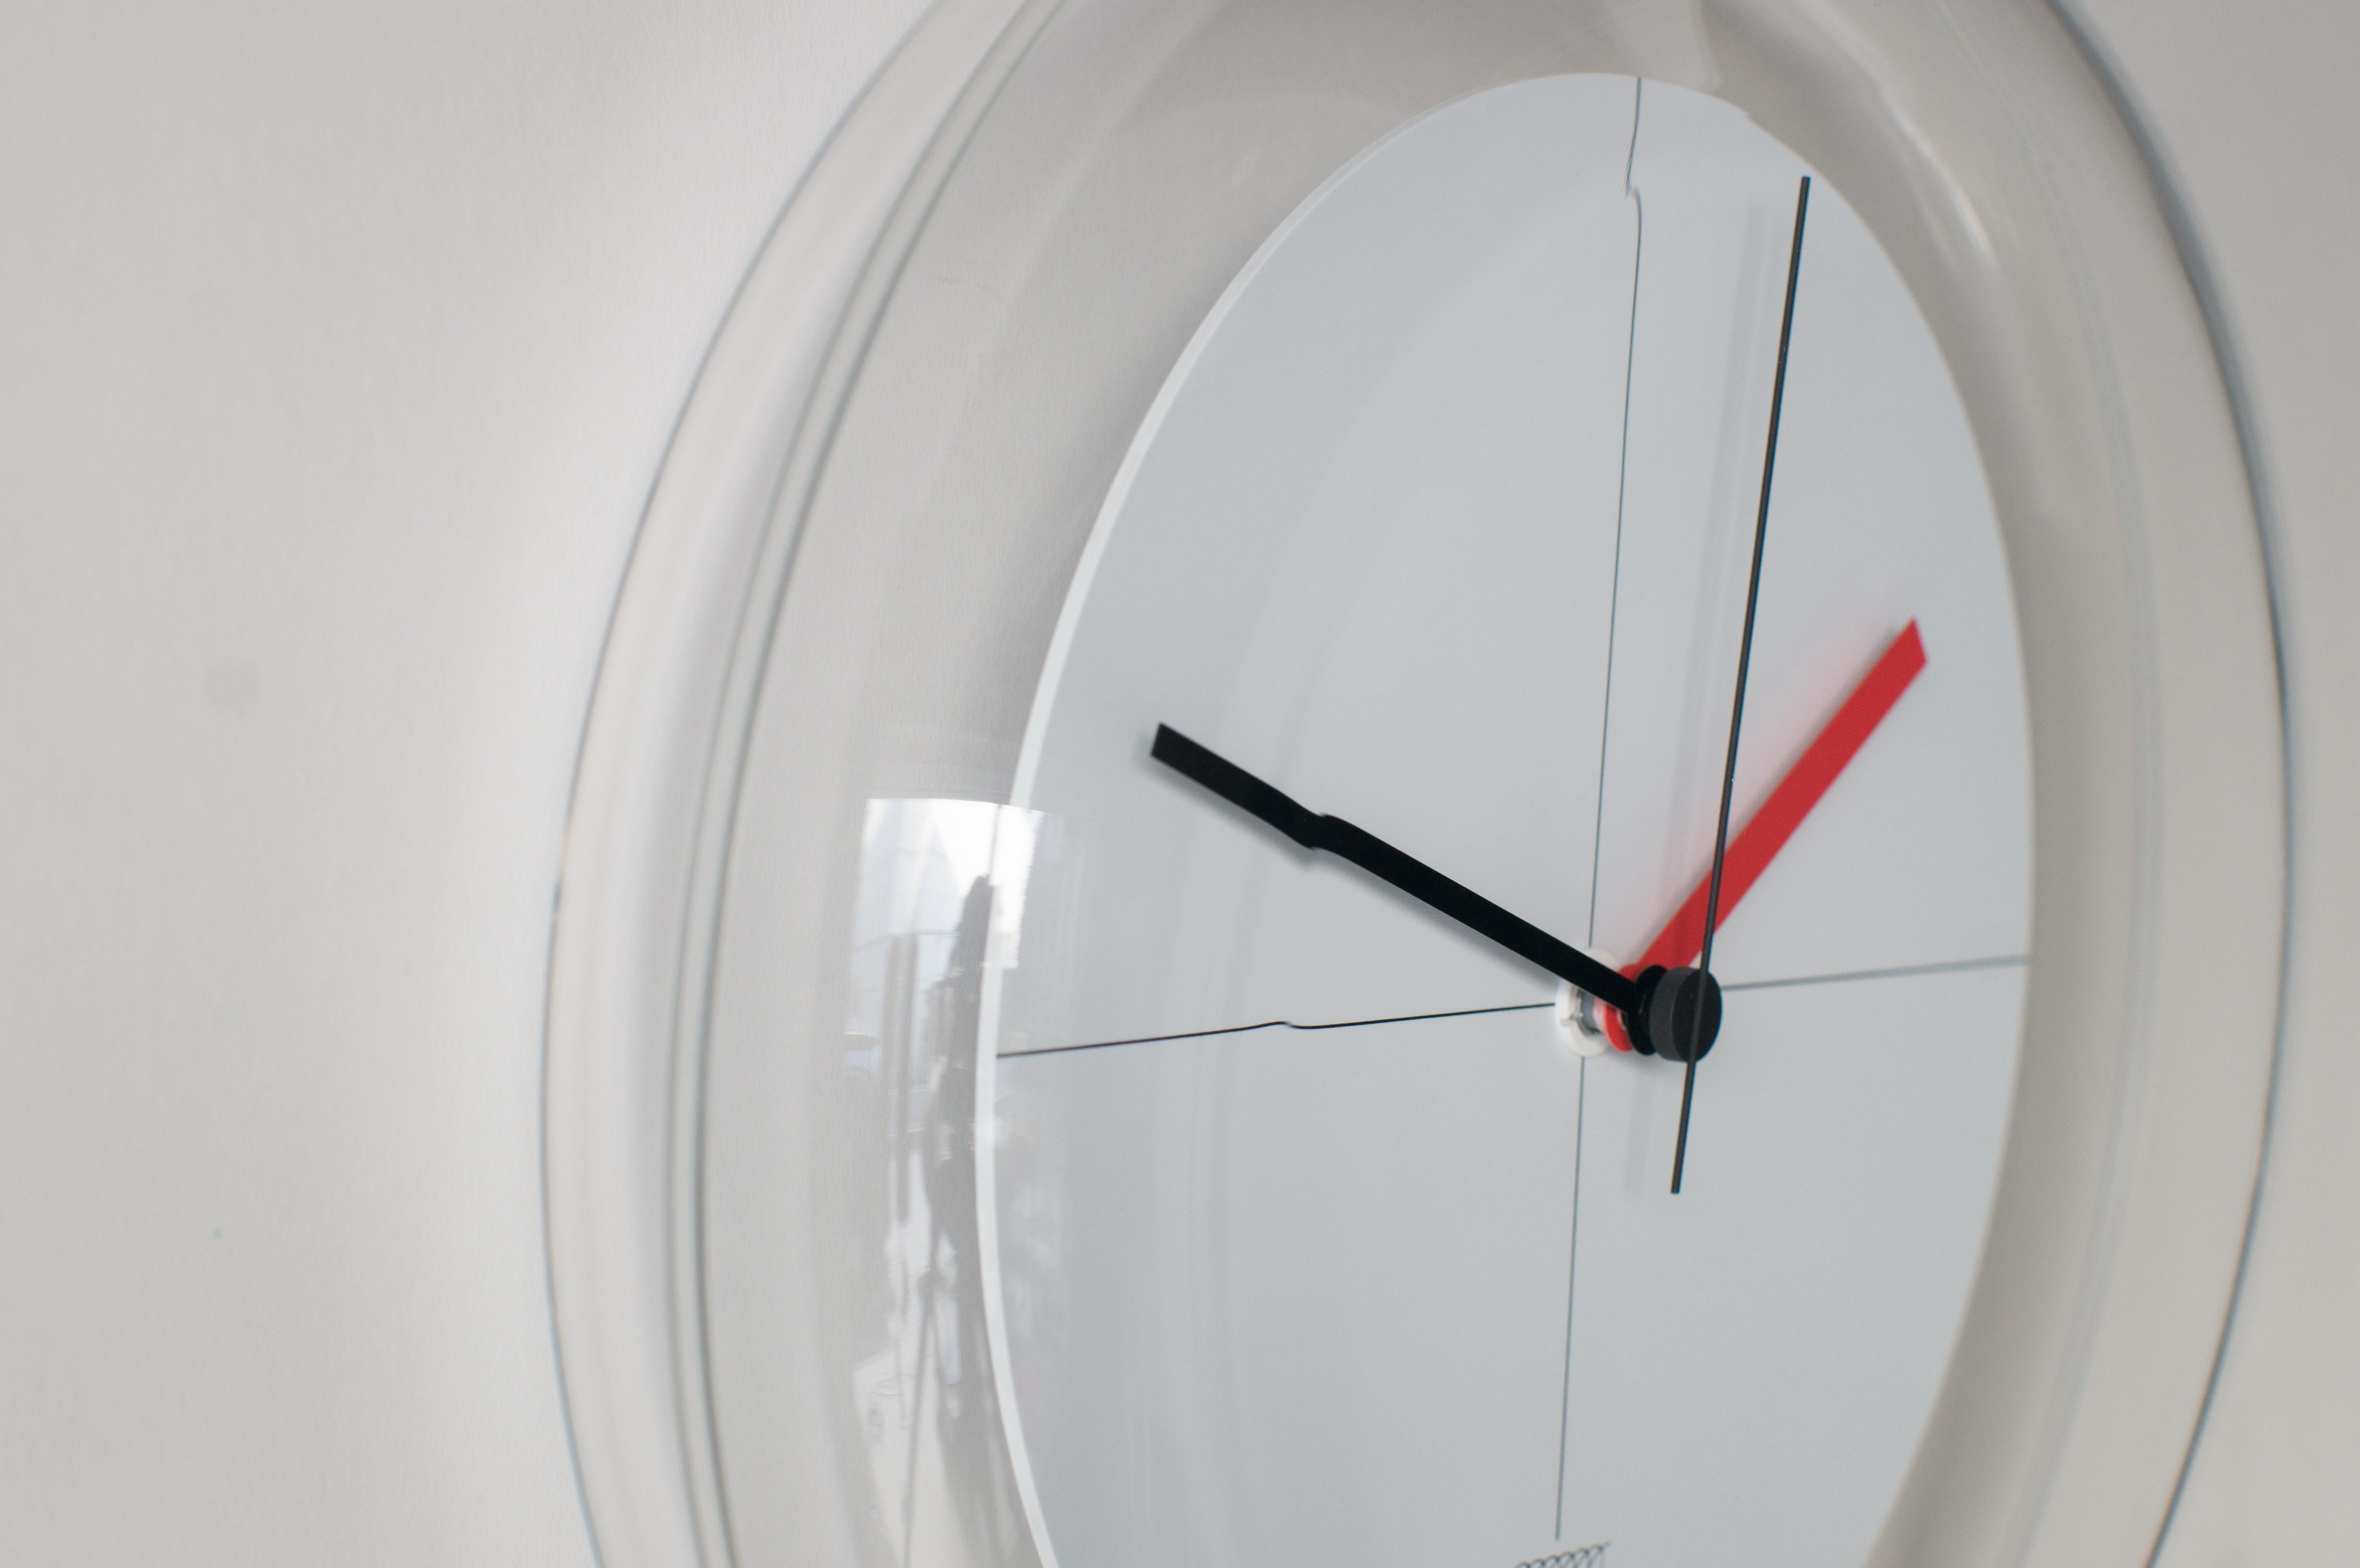 Post-Modern Spiral Clock A Shiro Kuramata Japanese Zen Minimal Postmodern